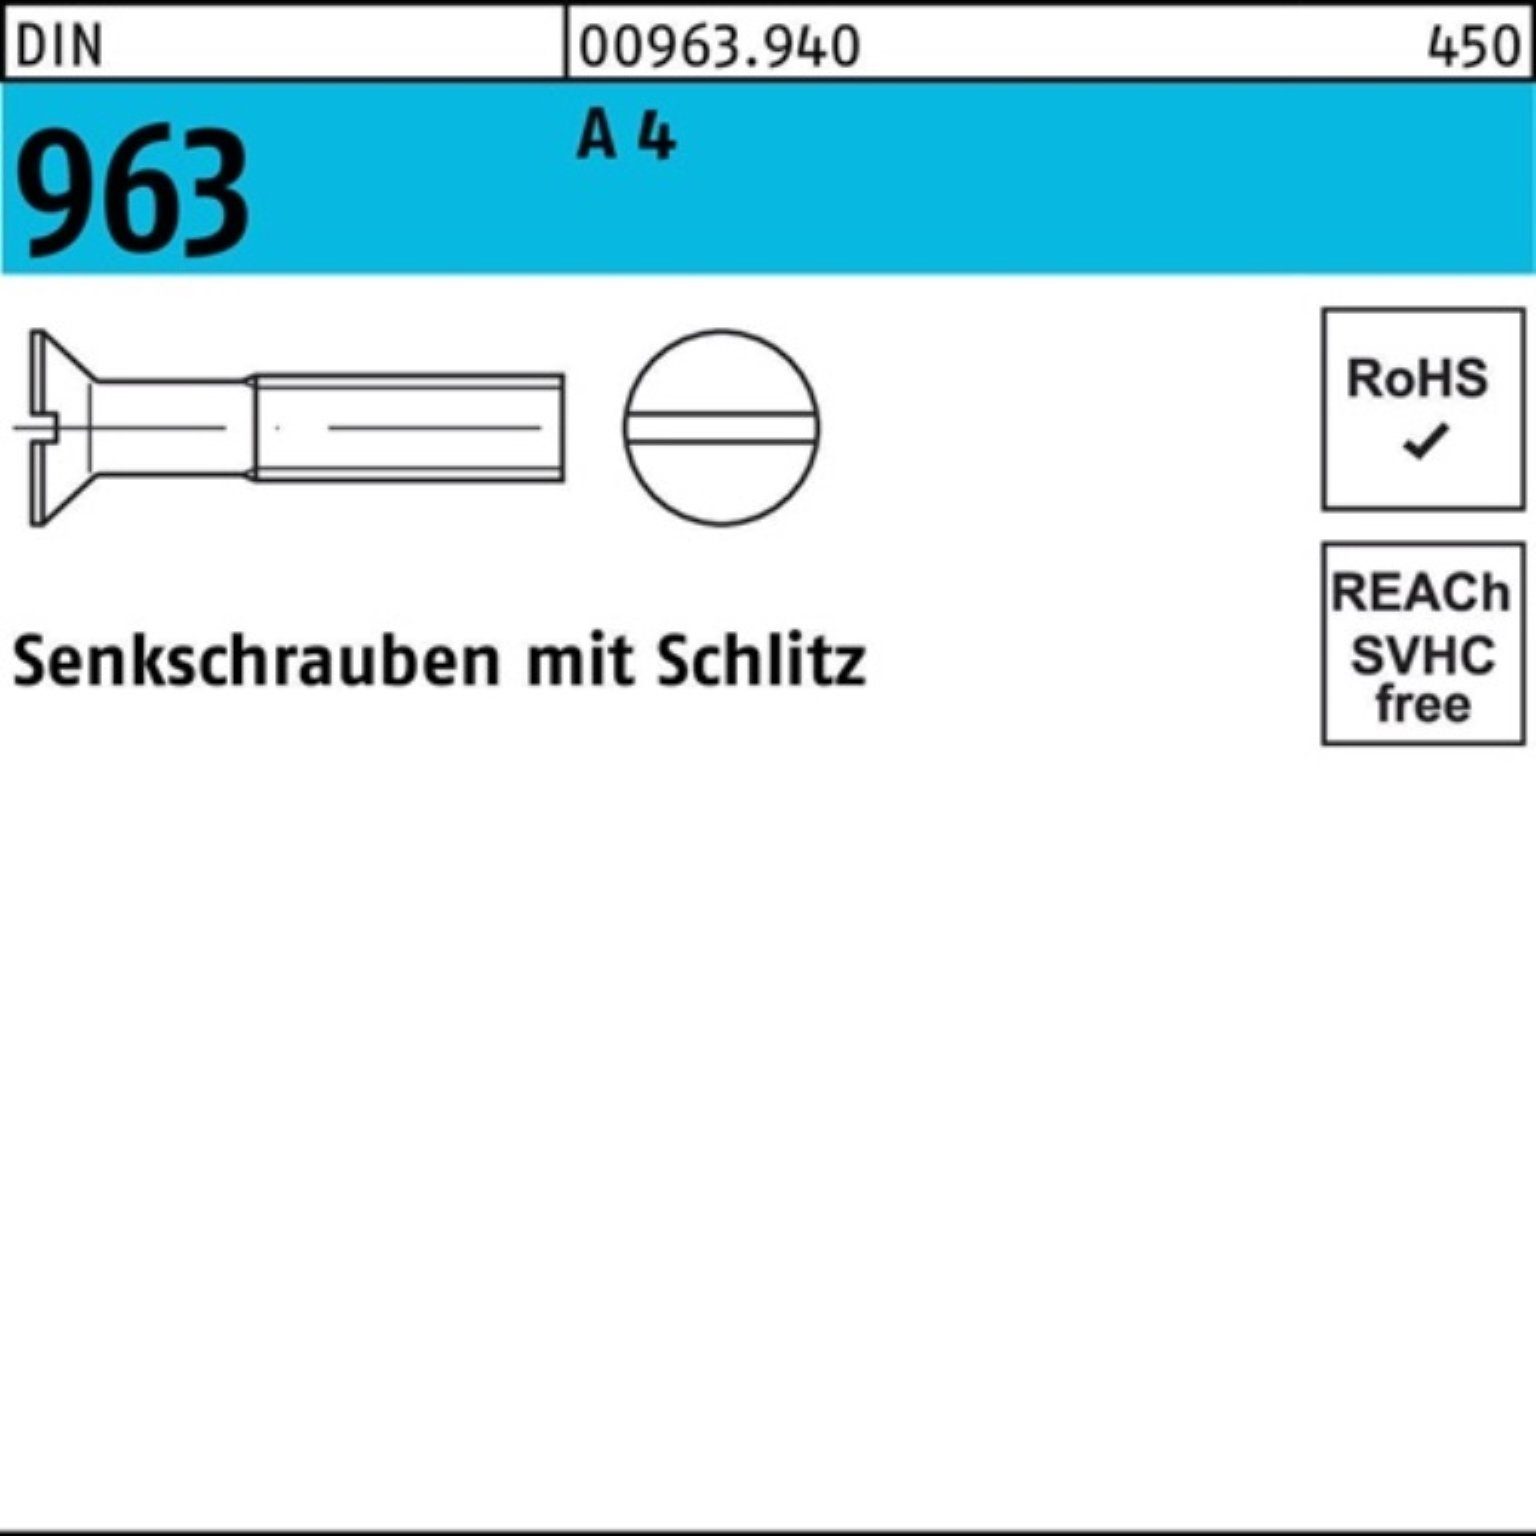 Reyher Senkschraube 1000er Pack Schlitz Stück A 1000 Senkschraube 4 M4x 963 DIN 96 DIN 20